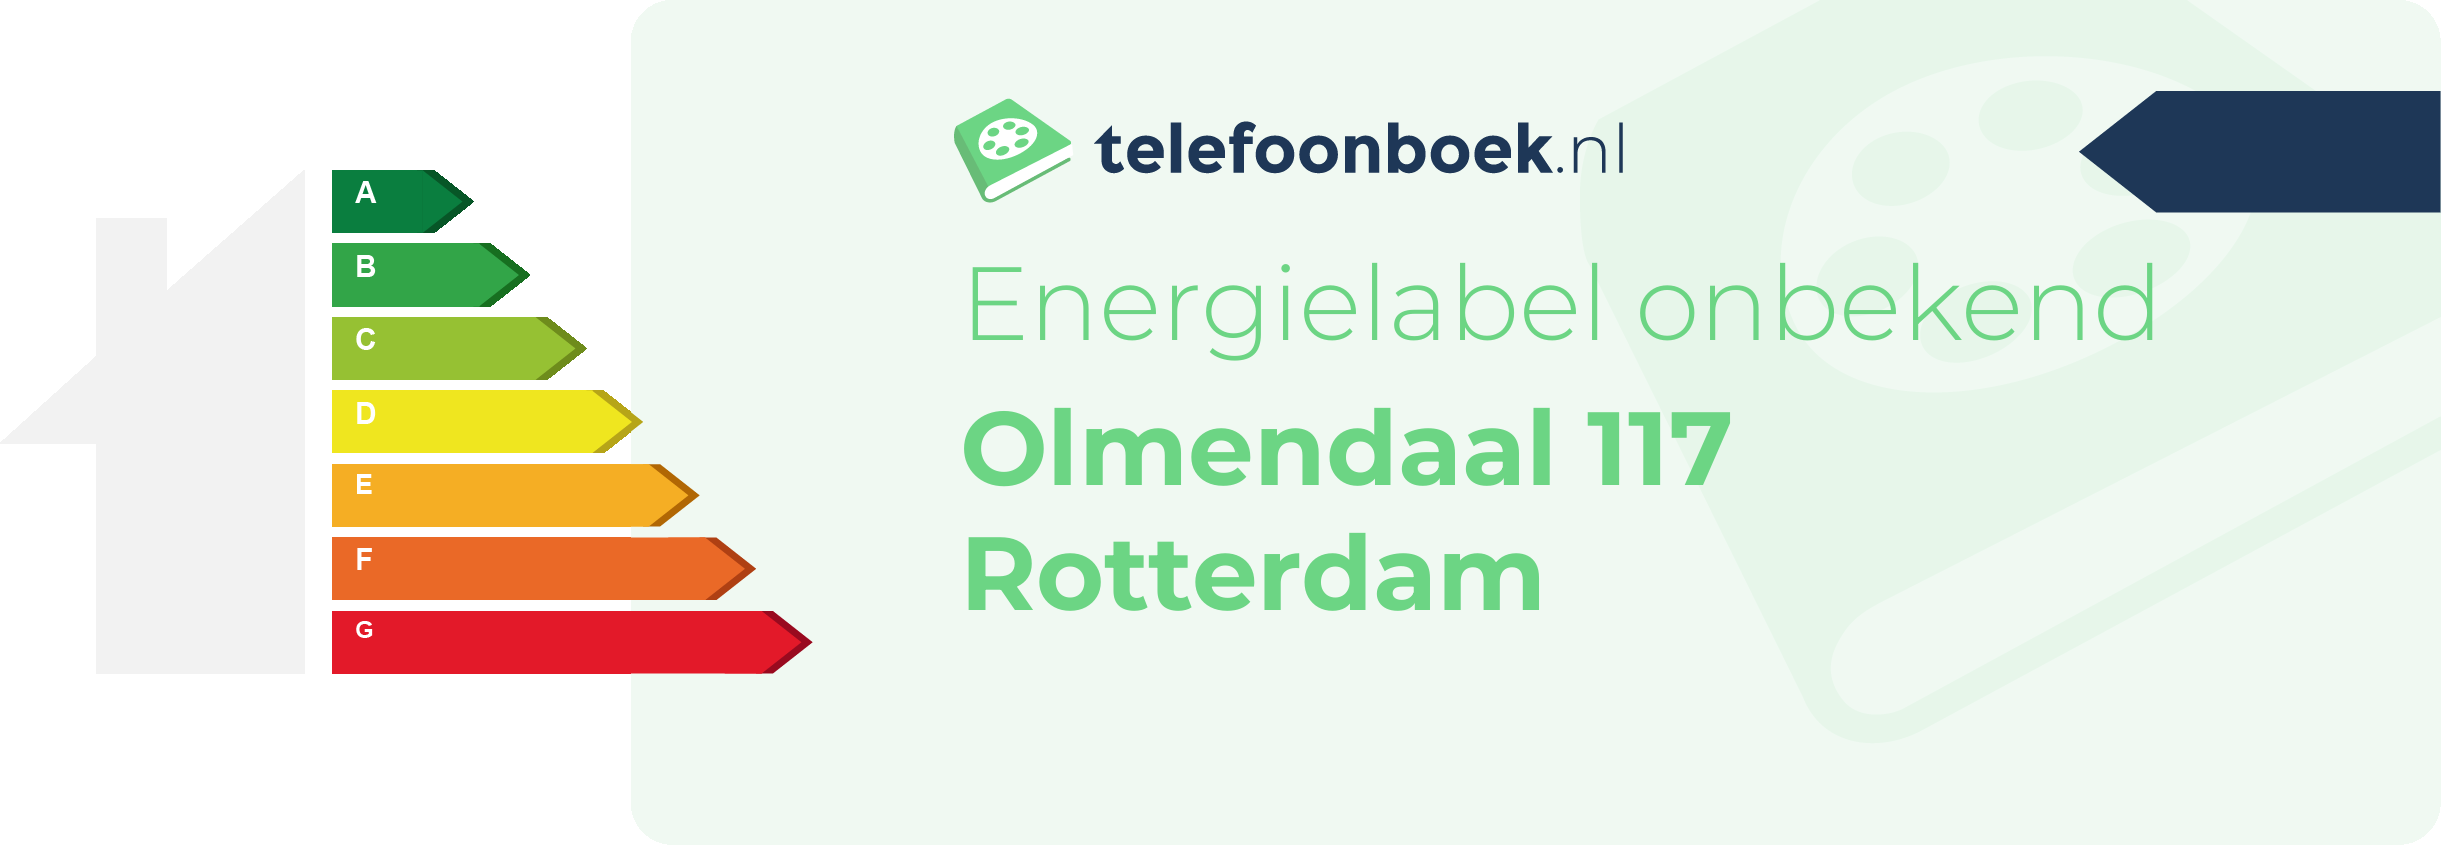 Energielabel Olmendaal 117 Rotterdam